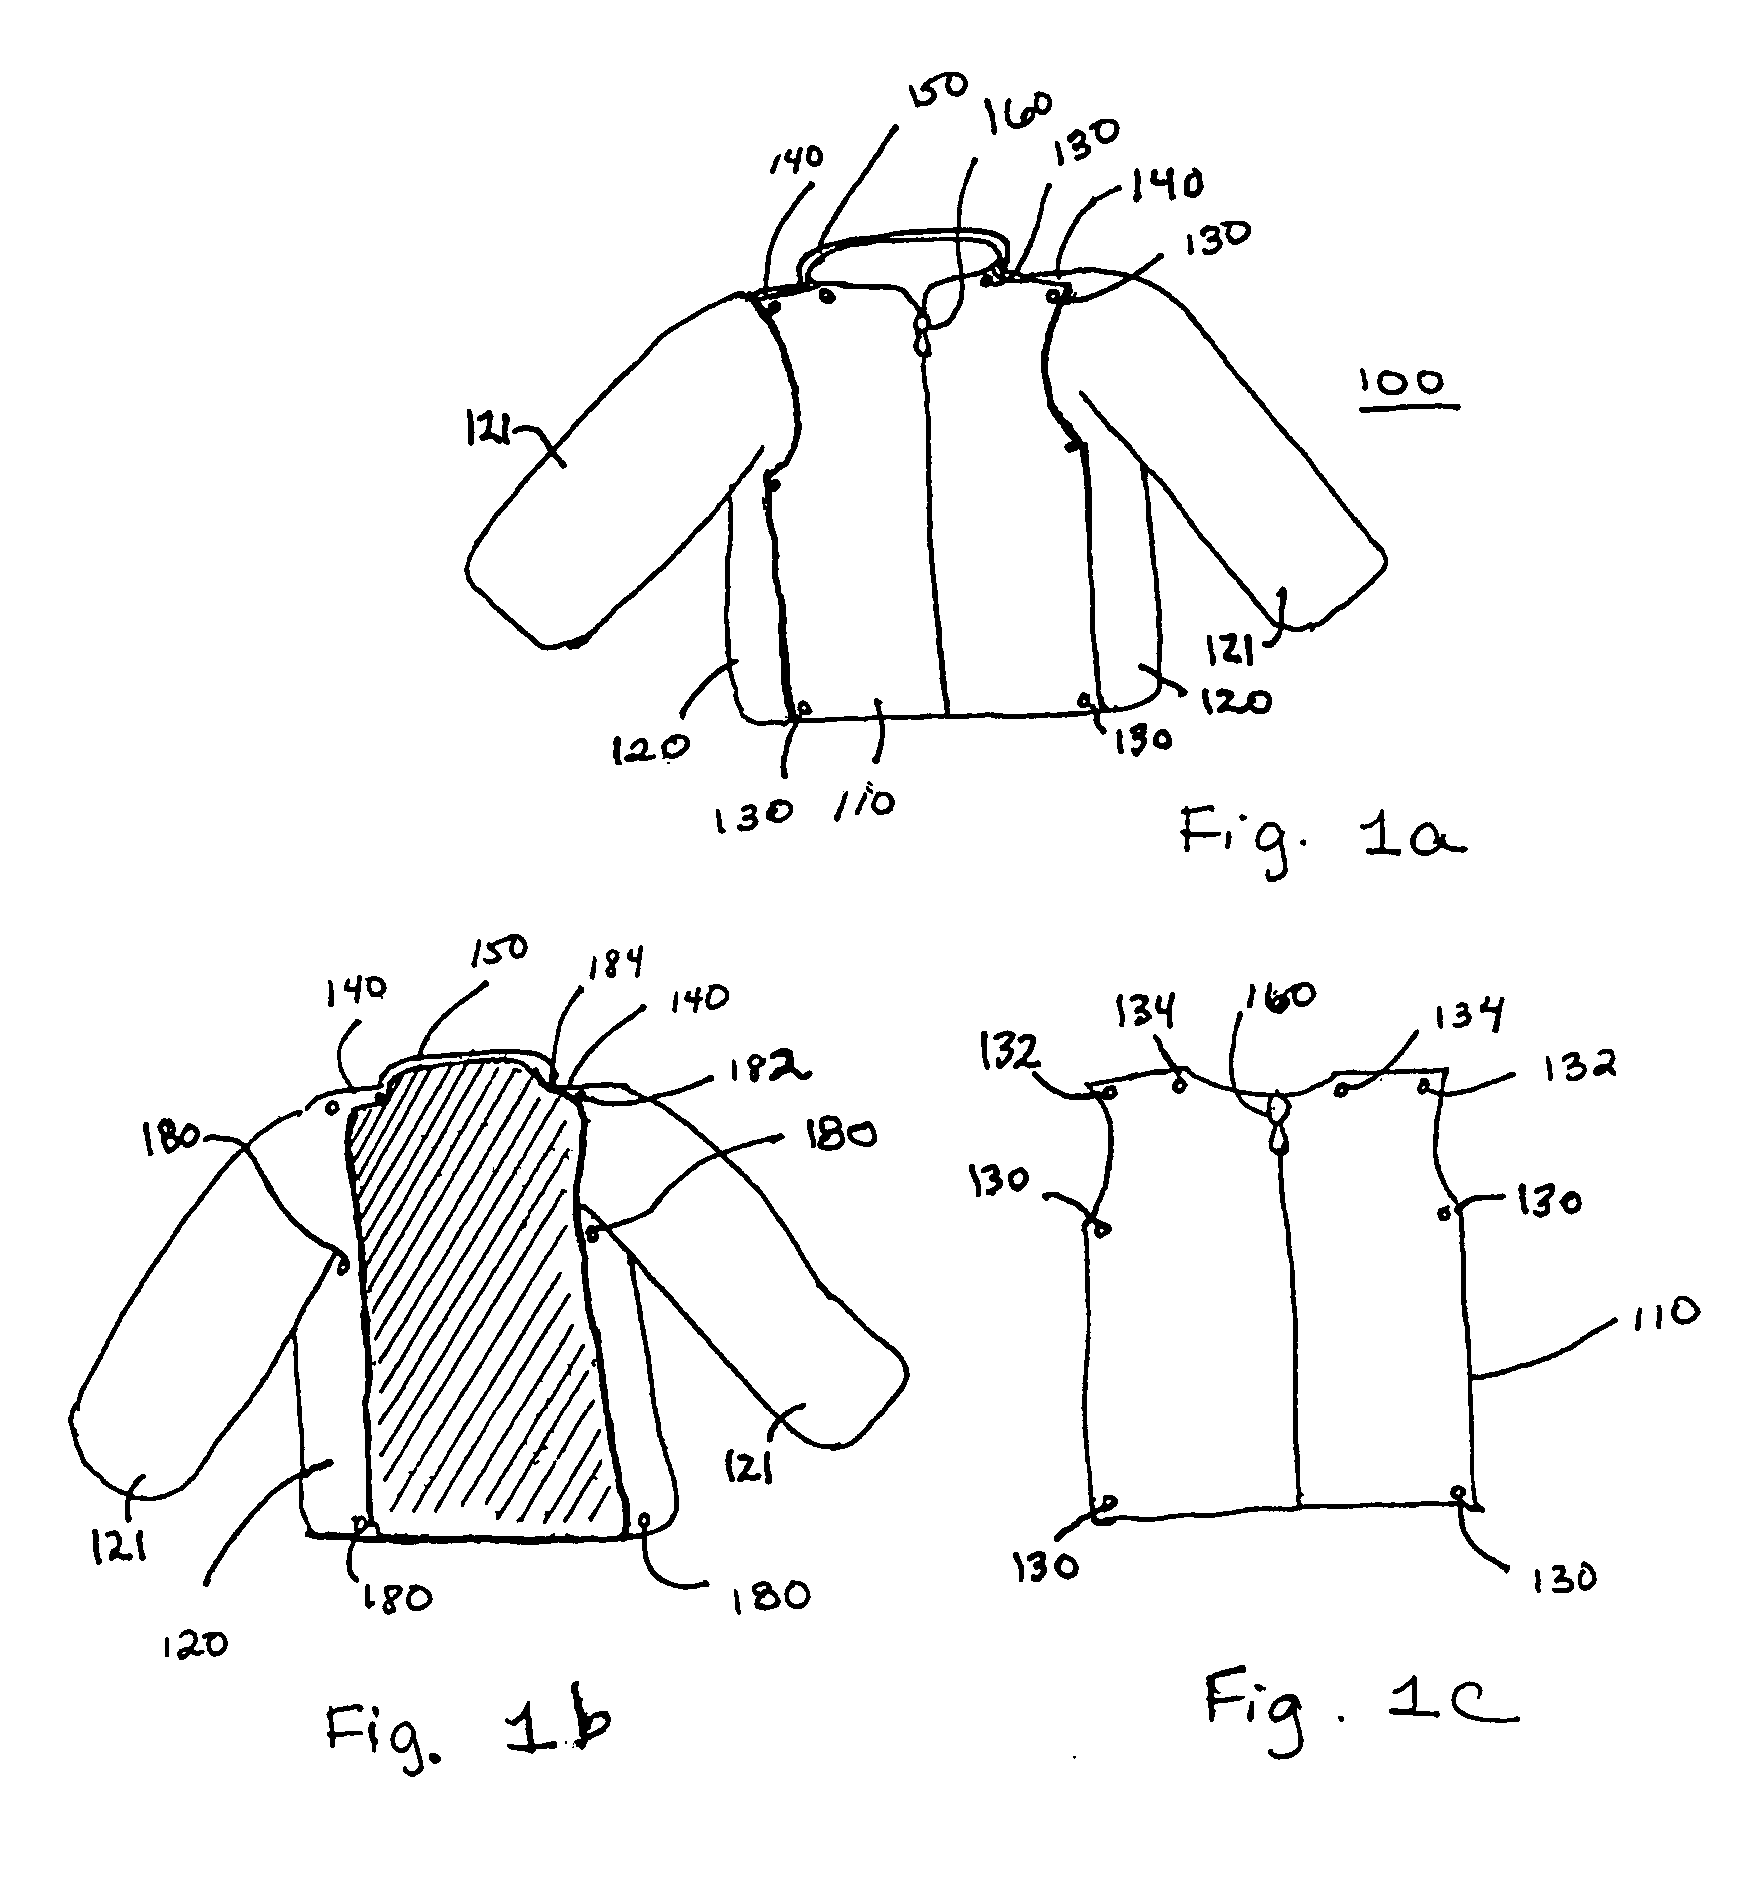 Child's outerwear garment